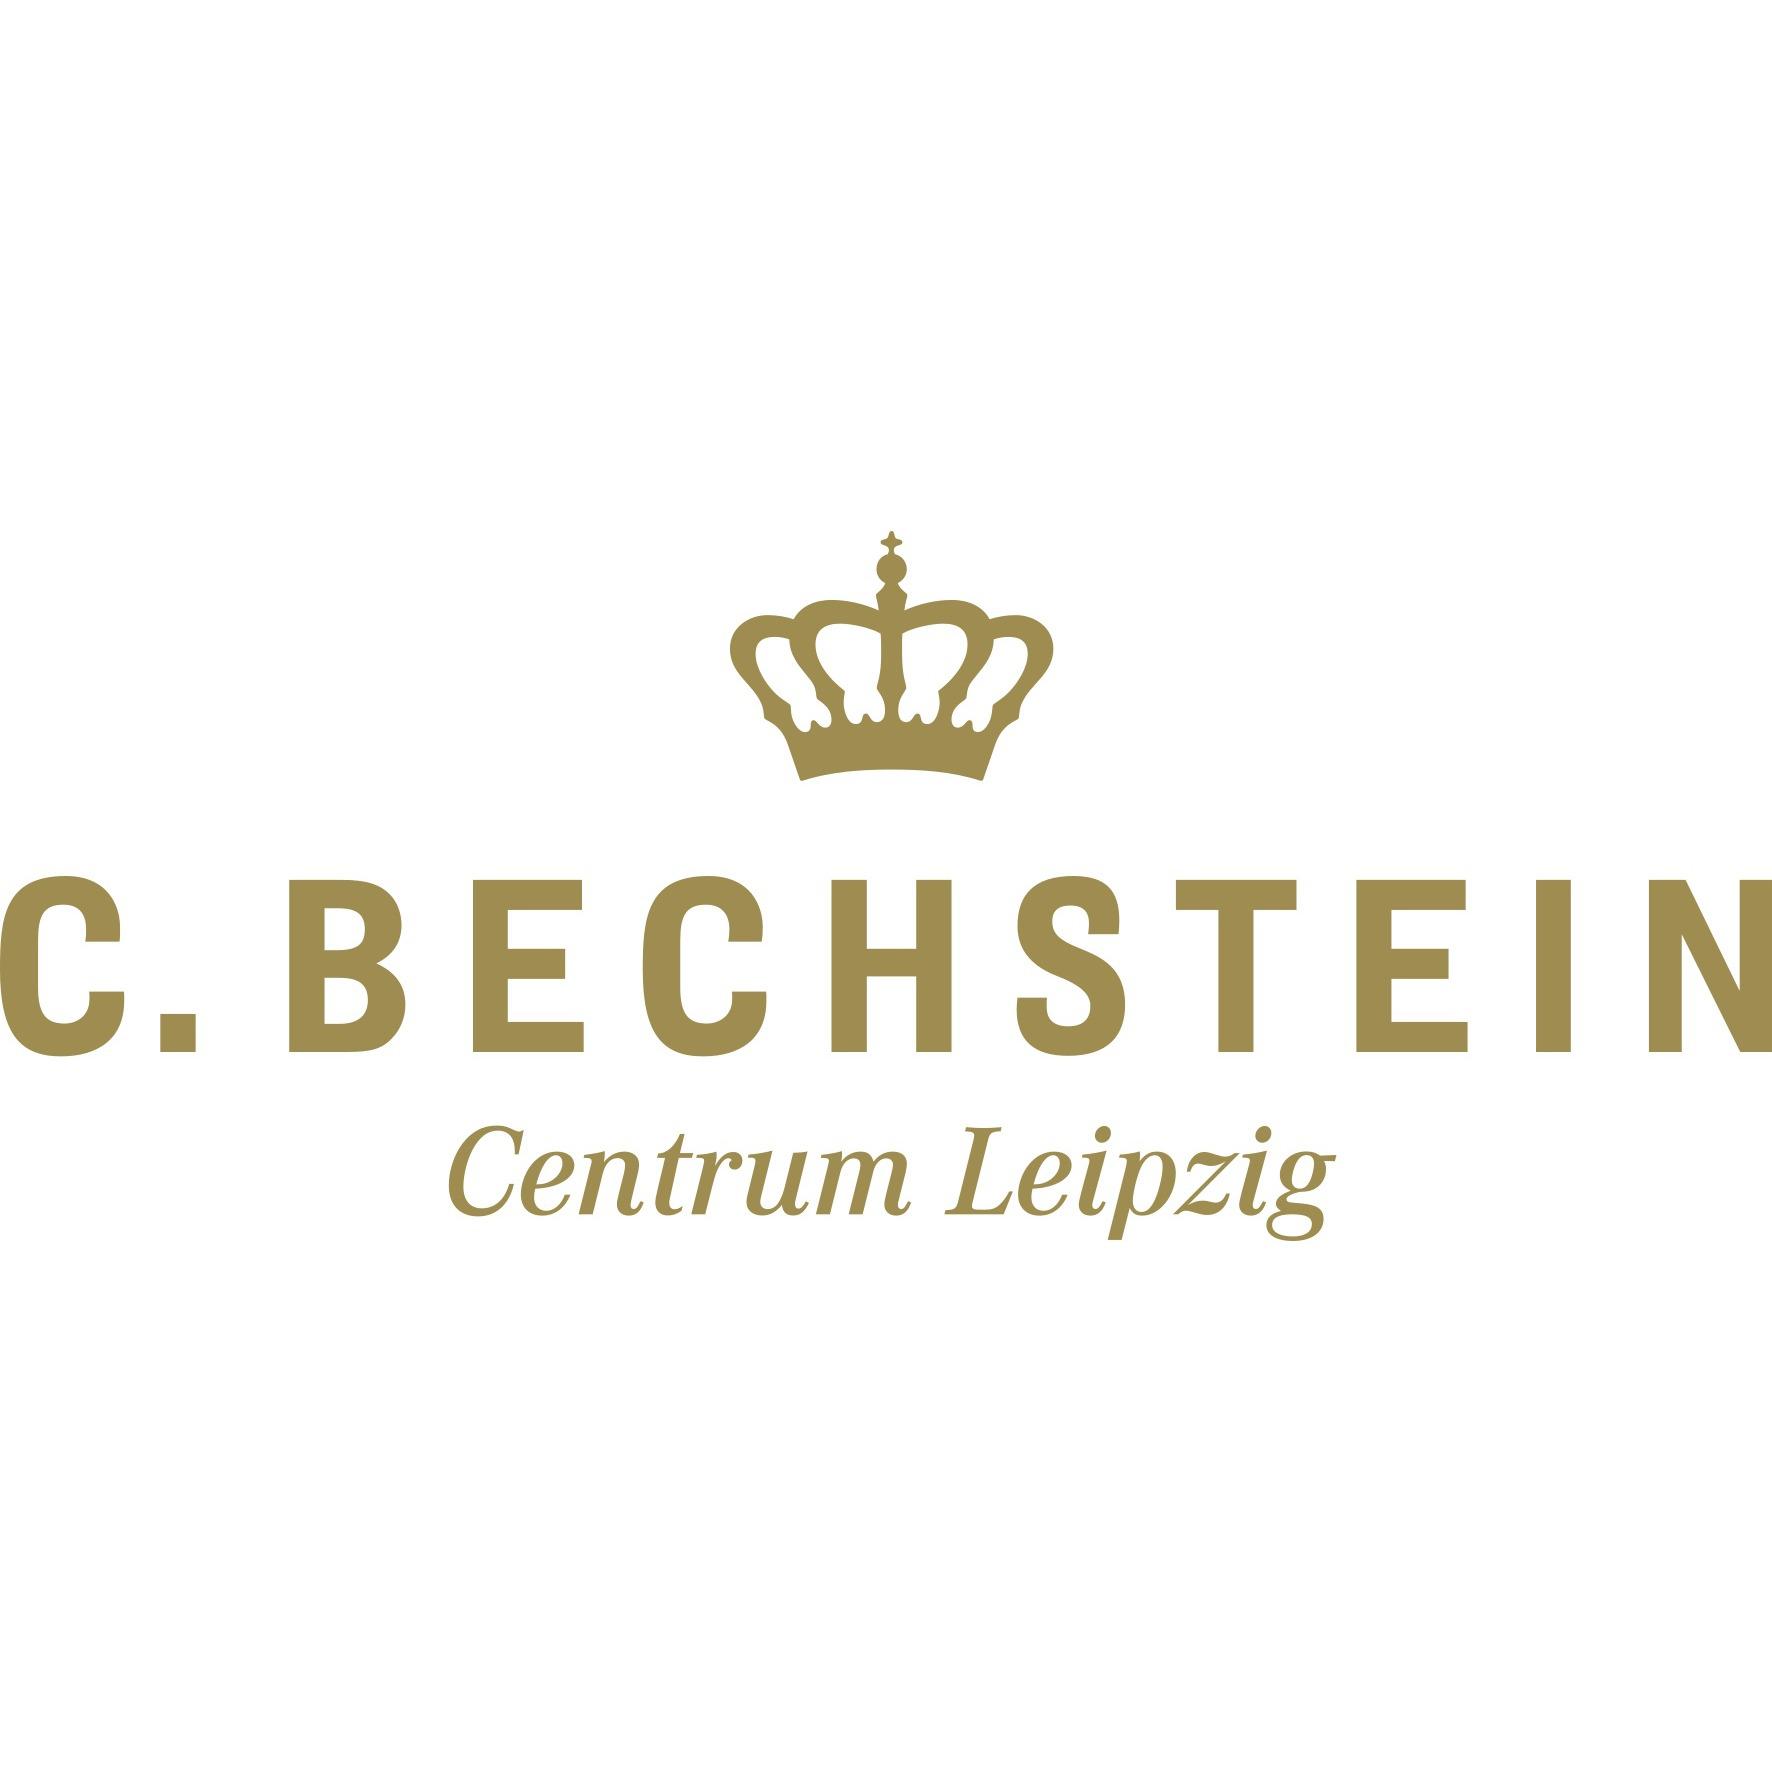 C. Bechstein Centrum Leipzig